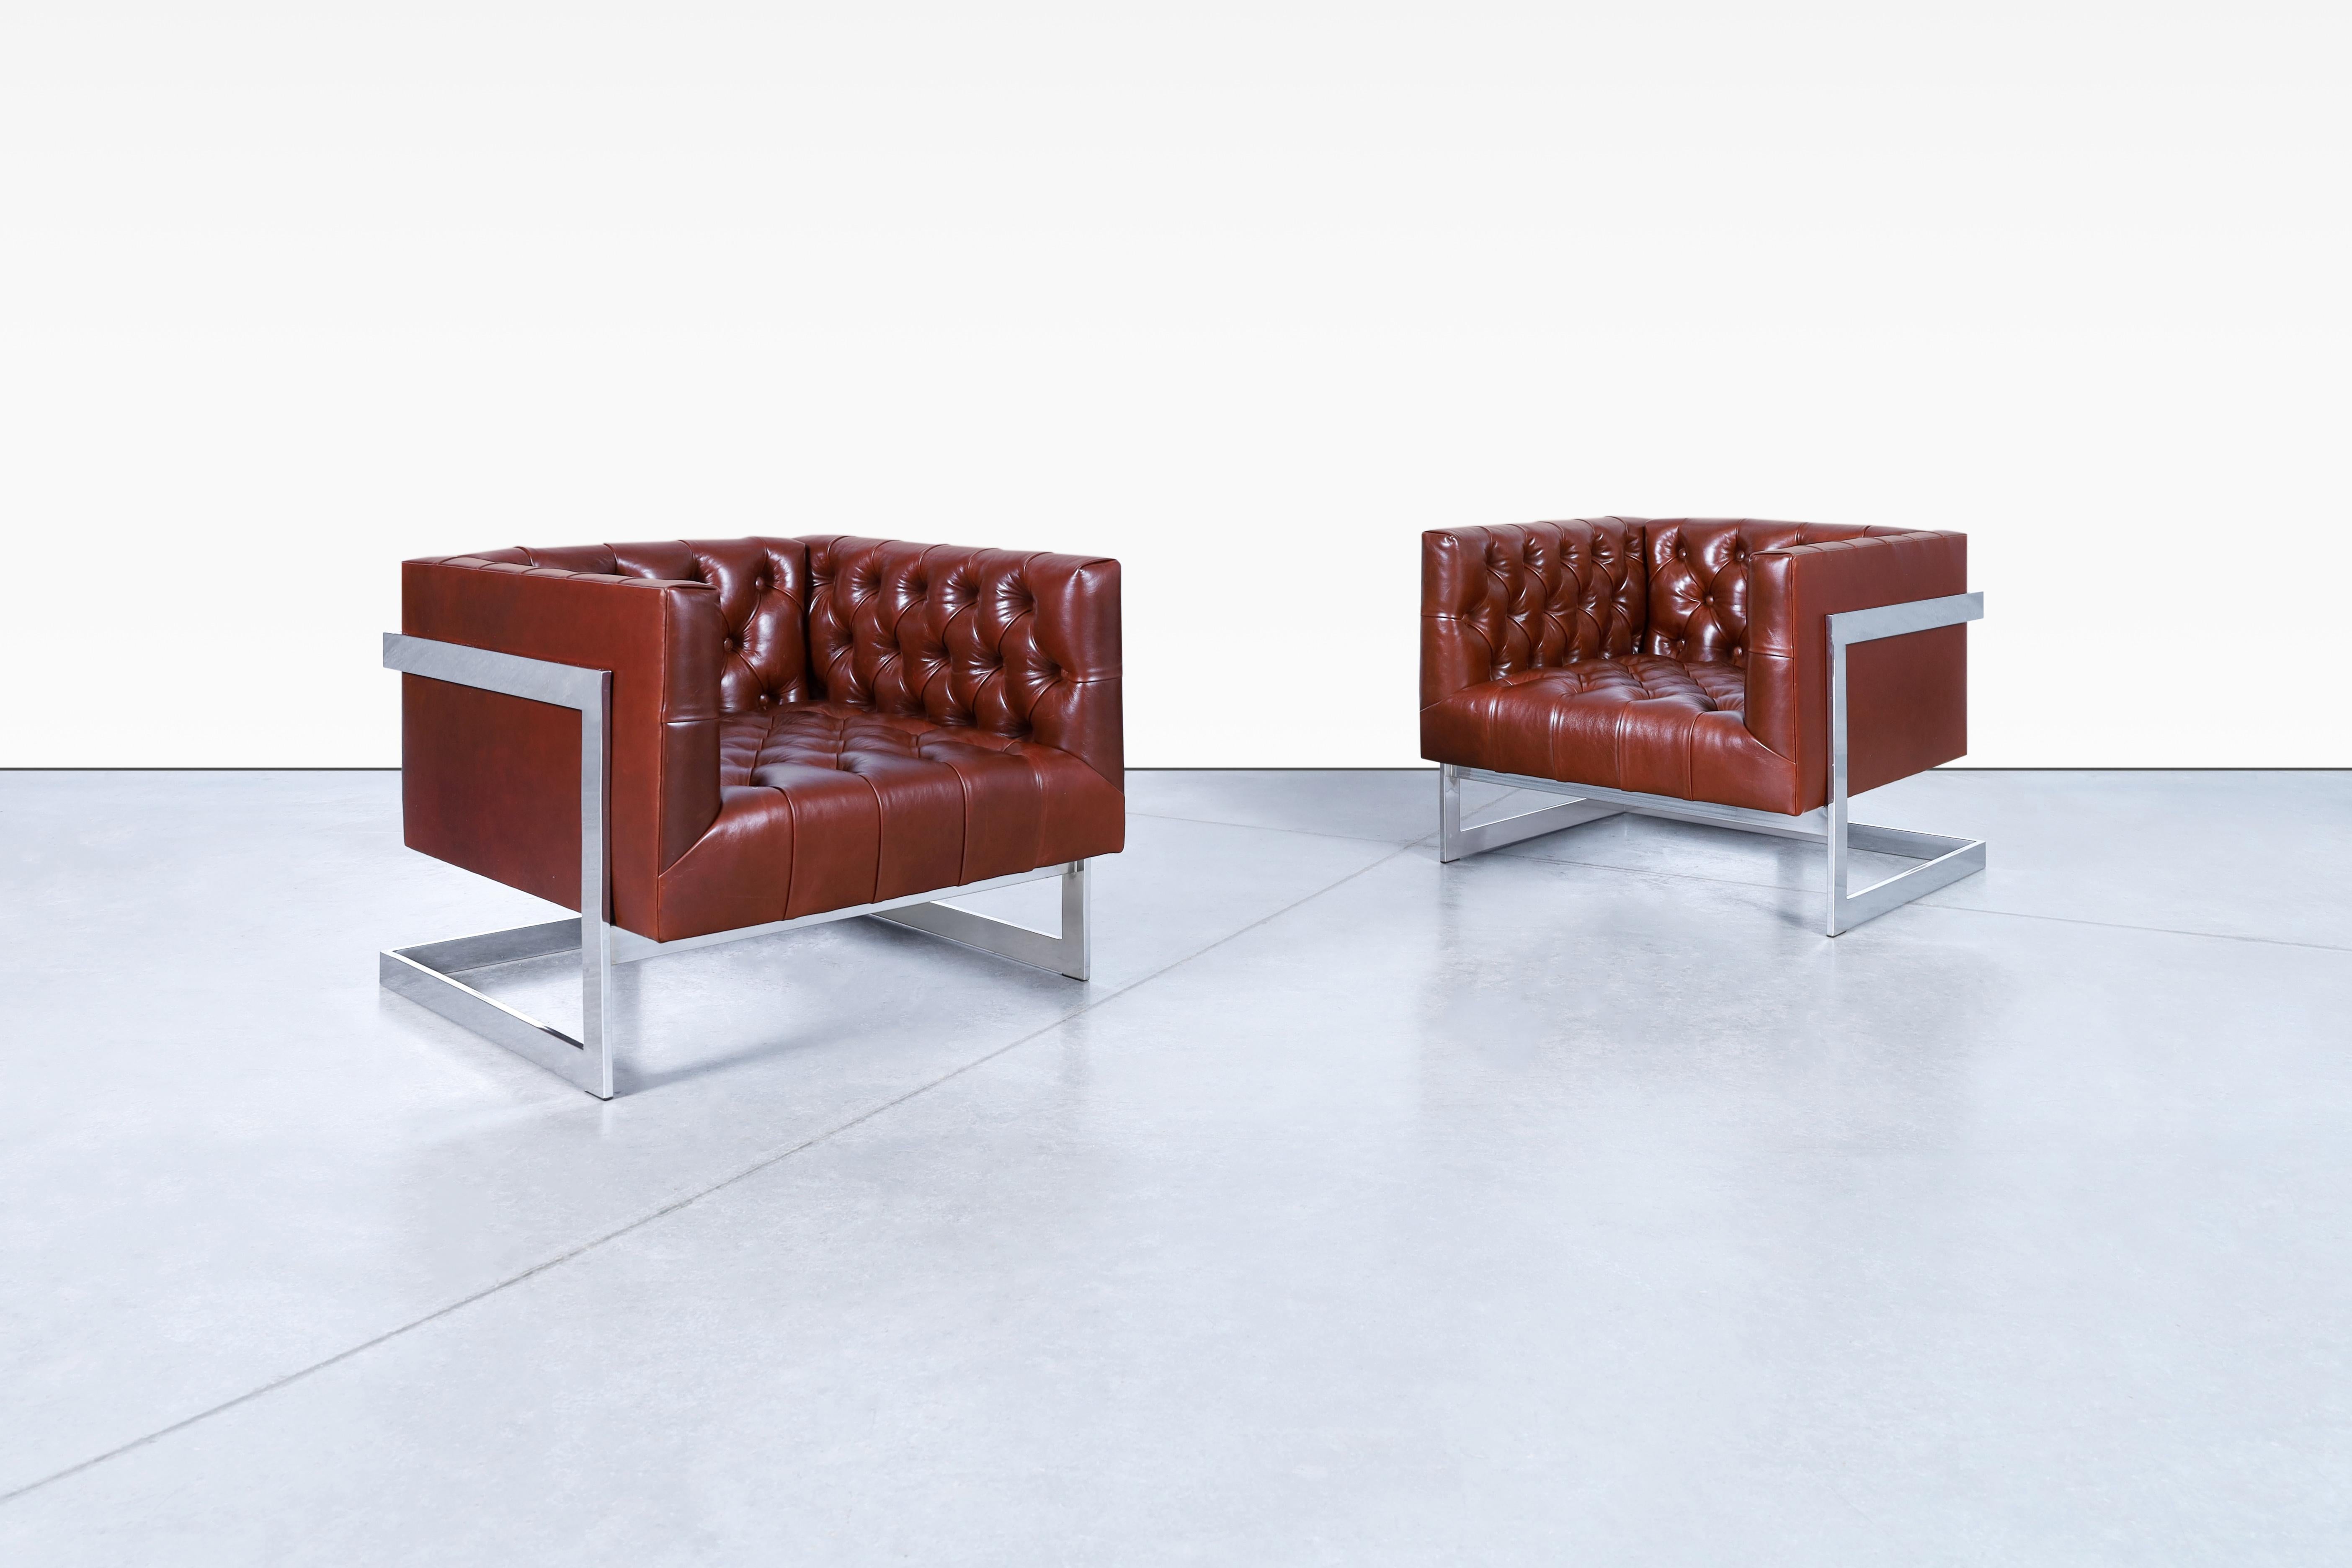 Superbes chaises longues vintage en cuir et chrome conçues par Milo Baughman pour Thayer CIRCA aux États-Unis, vers les années 1960. L'attrait de ces chaises est tout simplement époustouflant. Leurs cadres chromés élégants créent une illusion